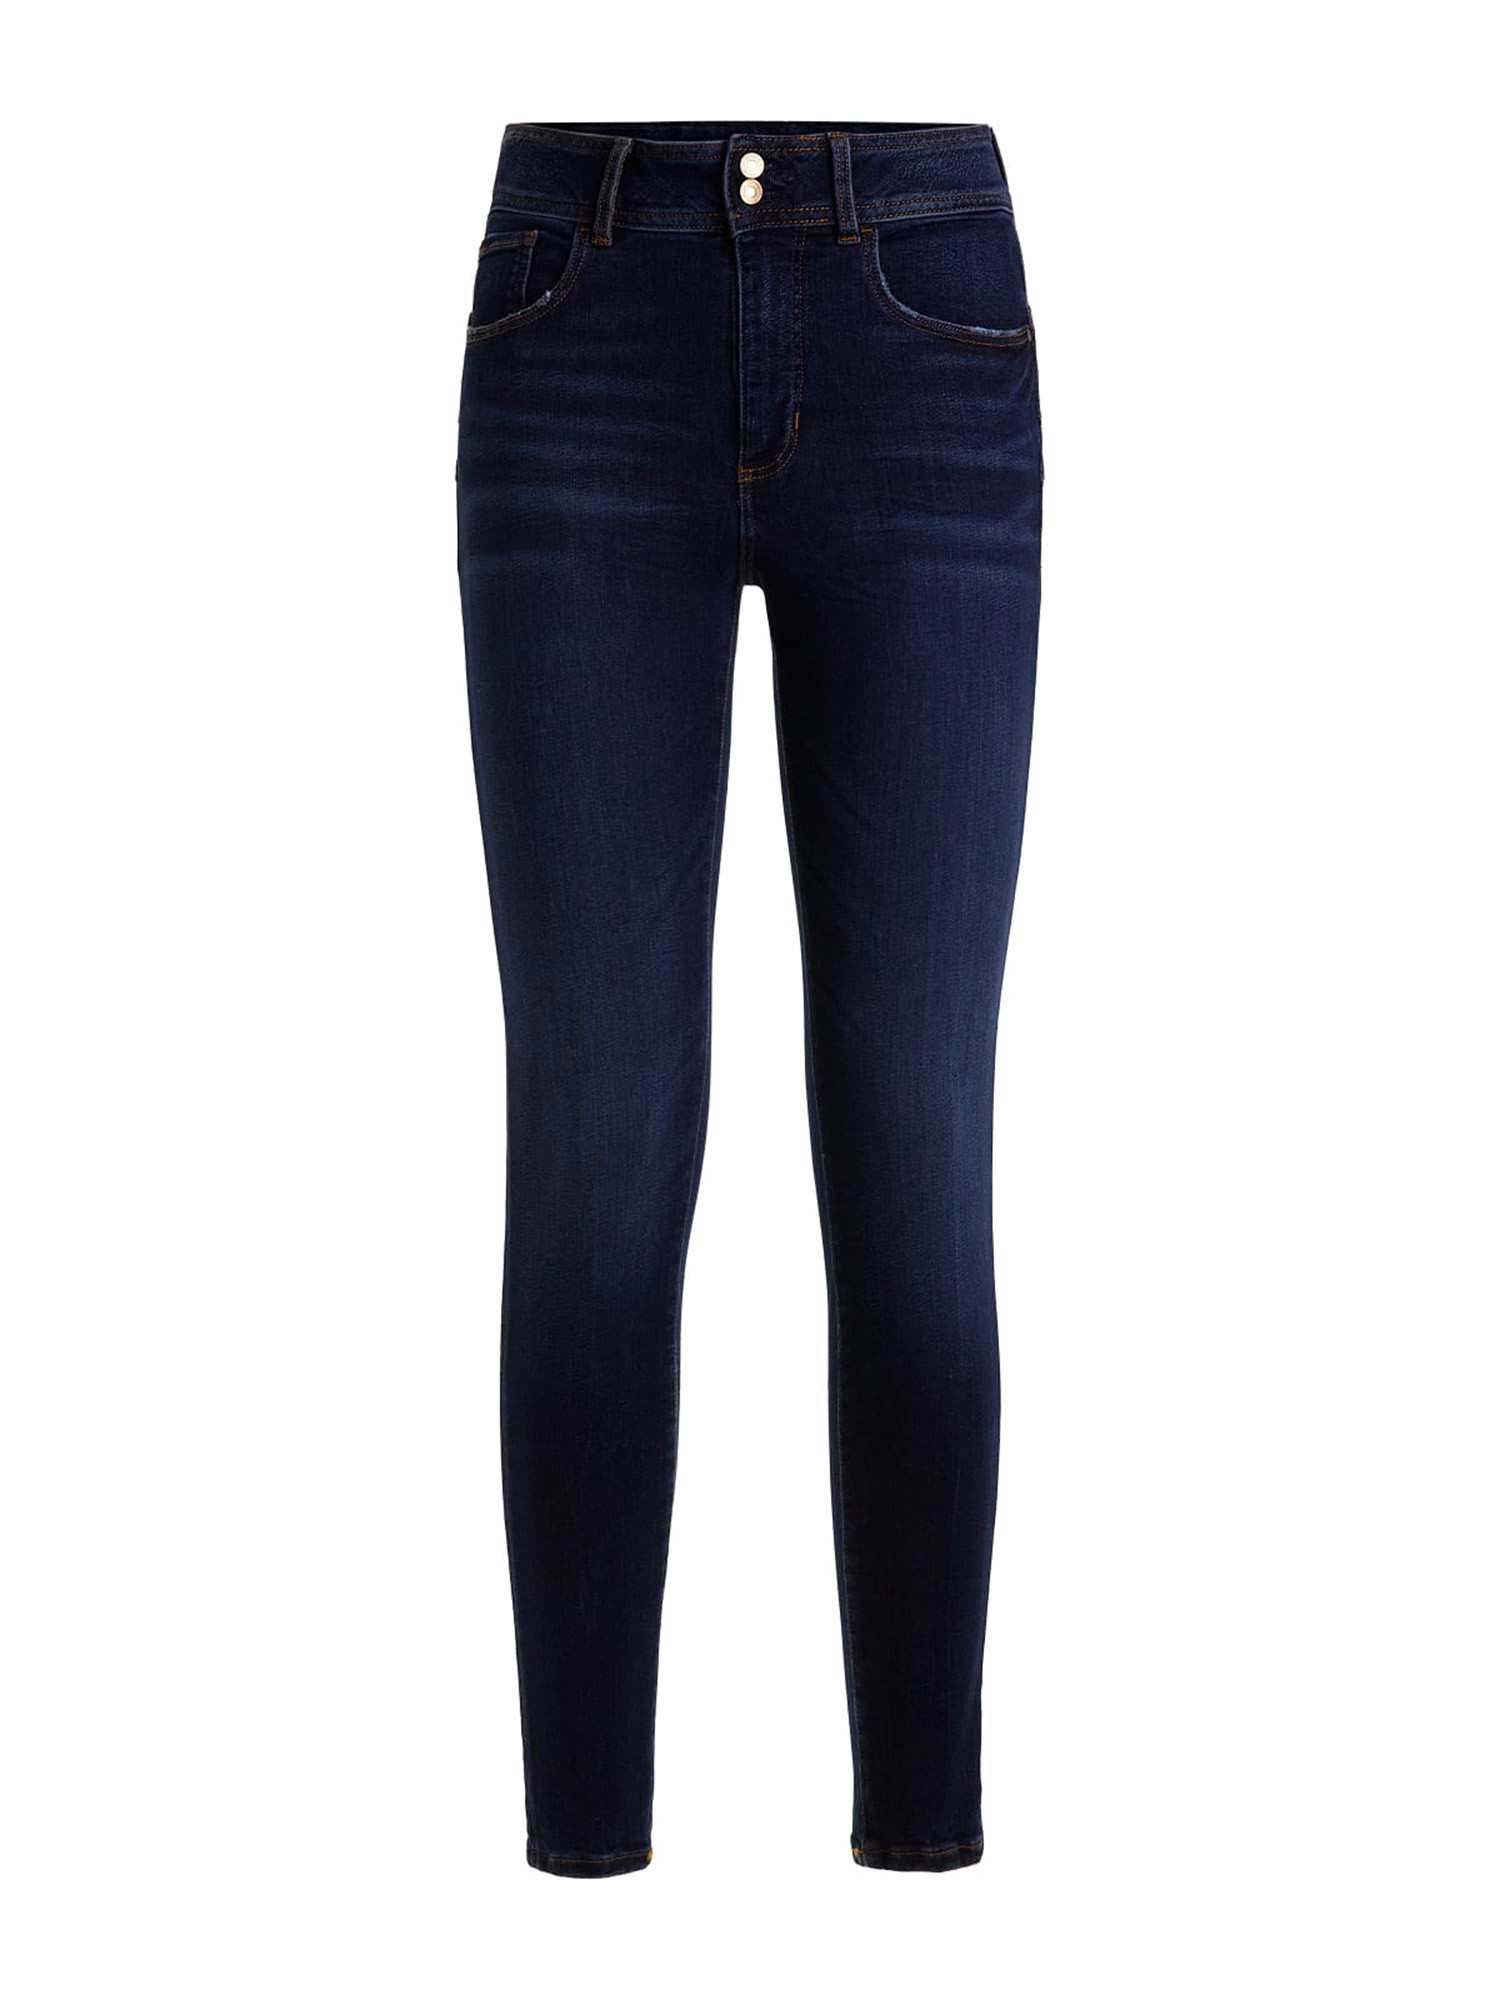 Guess - 5-pocket skinny jeans, Dark Blue, large image number 0